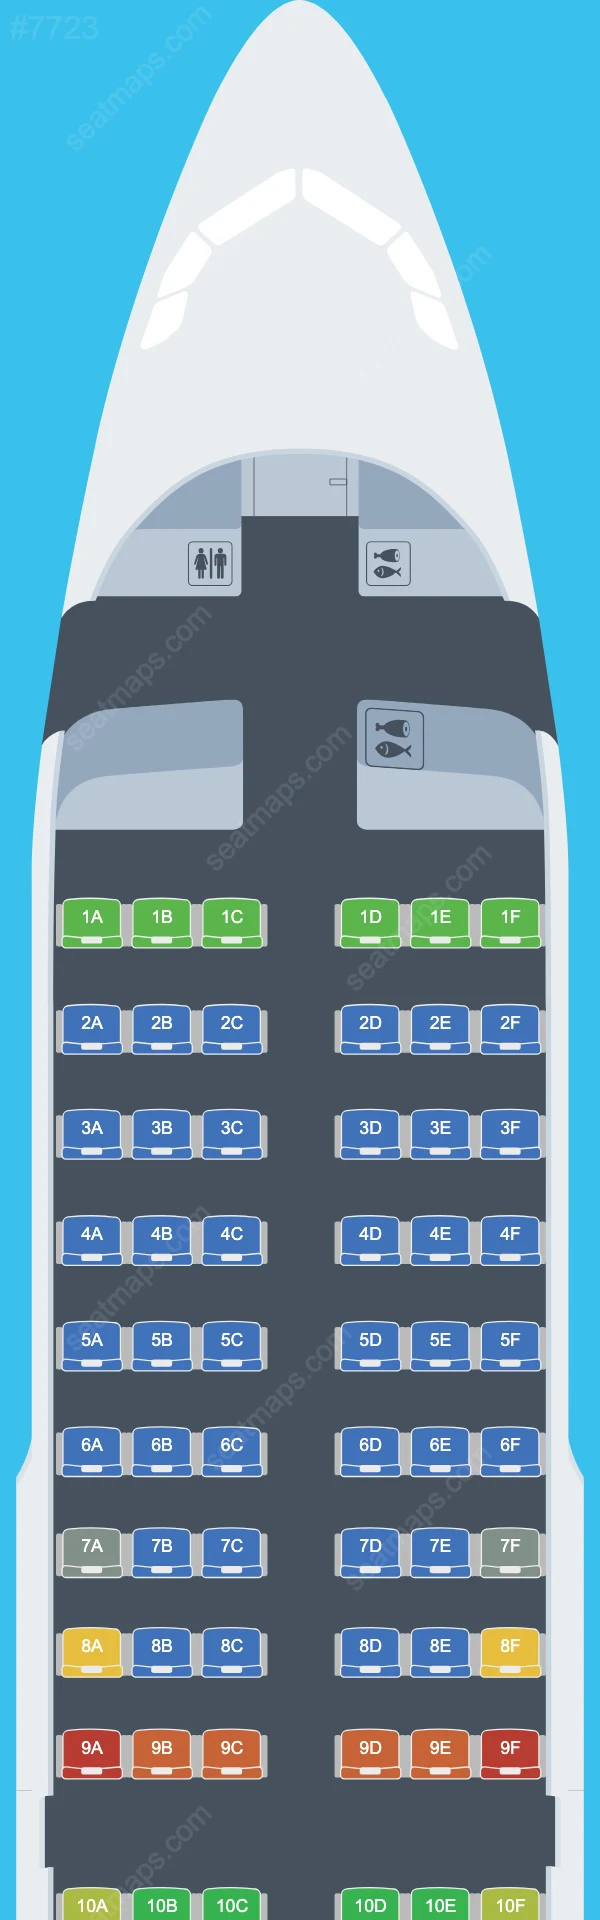 Lufthansa Airbus A319 Seat Maps A319-100 V.1